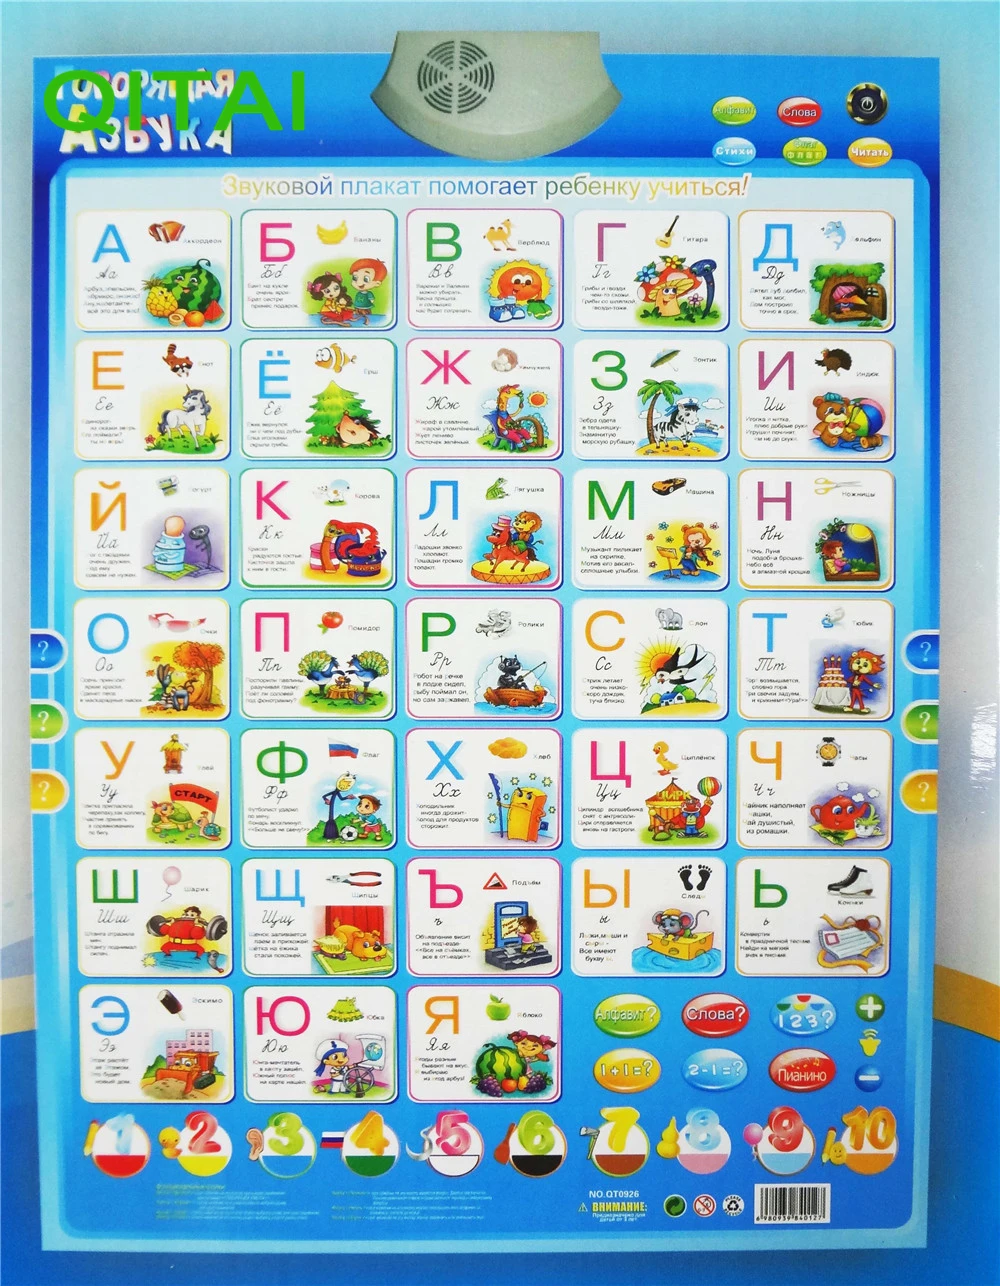 Русский алфавит говорящий плакат Россия детские развивающие игрушки электронный плакат образовательная фонетическая карта Розничная упаковка коробки